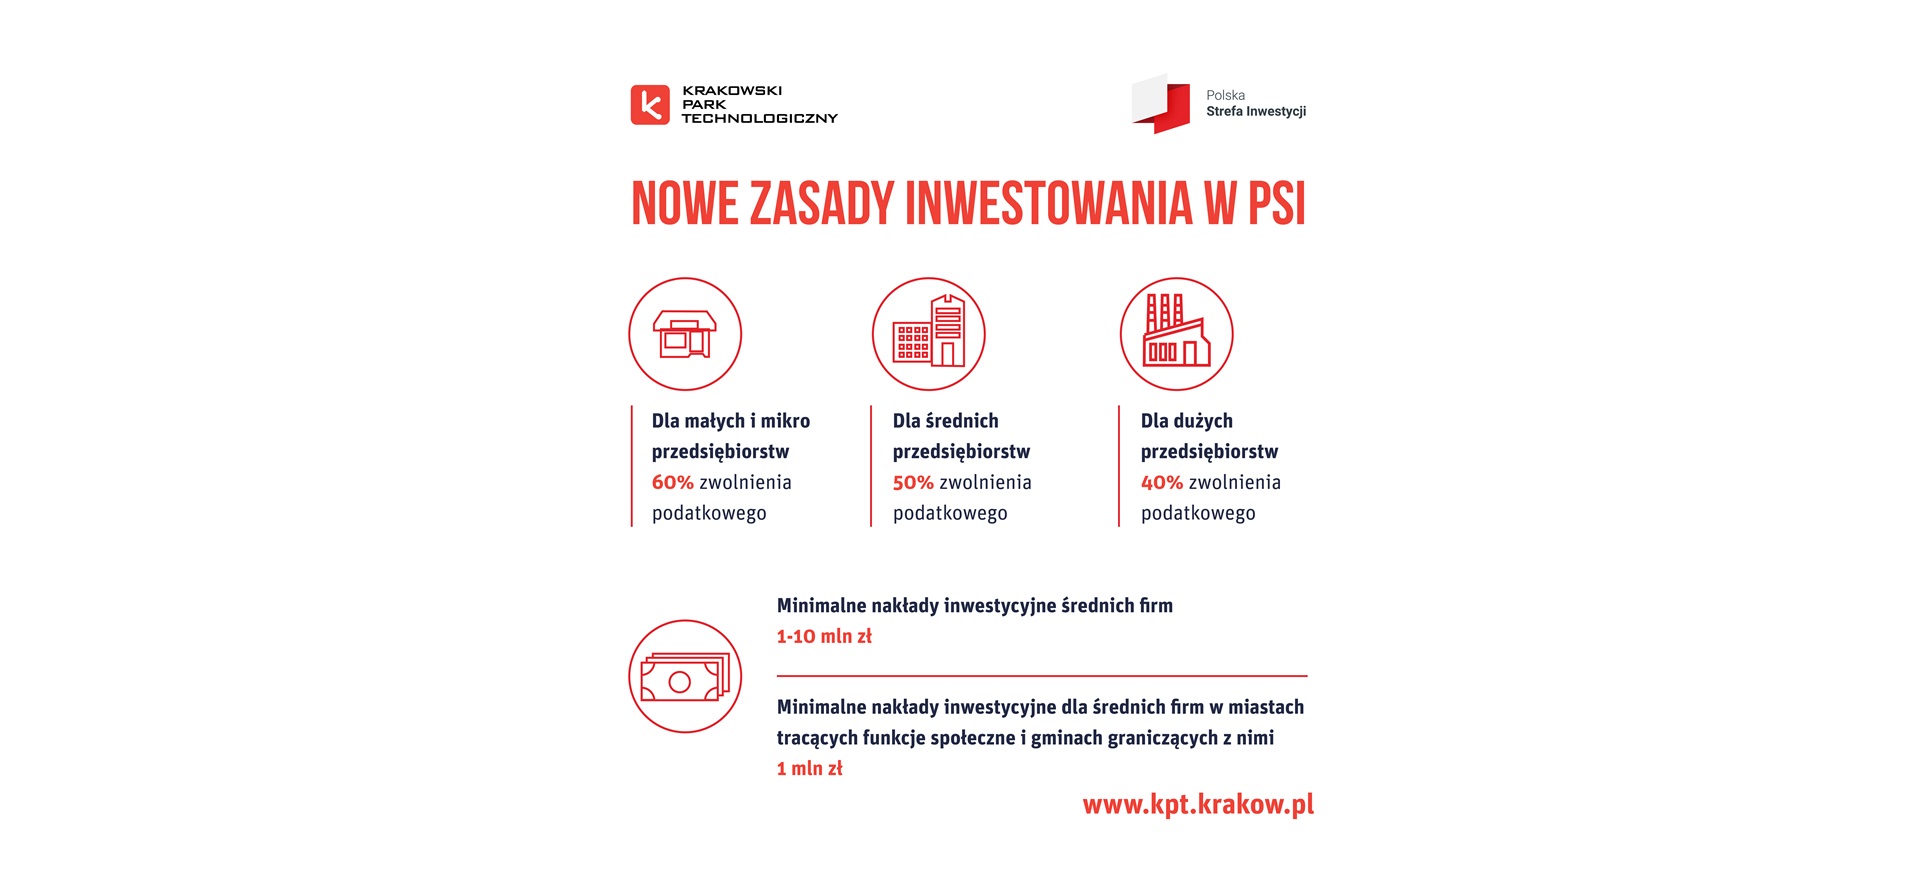 Ulgi podatkowe dla małopolskich przedsiębiorców. Wsparcie Krakowskiego Parku Technologicznego dla firm